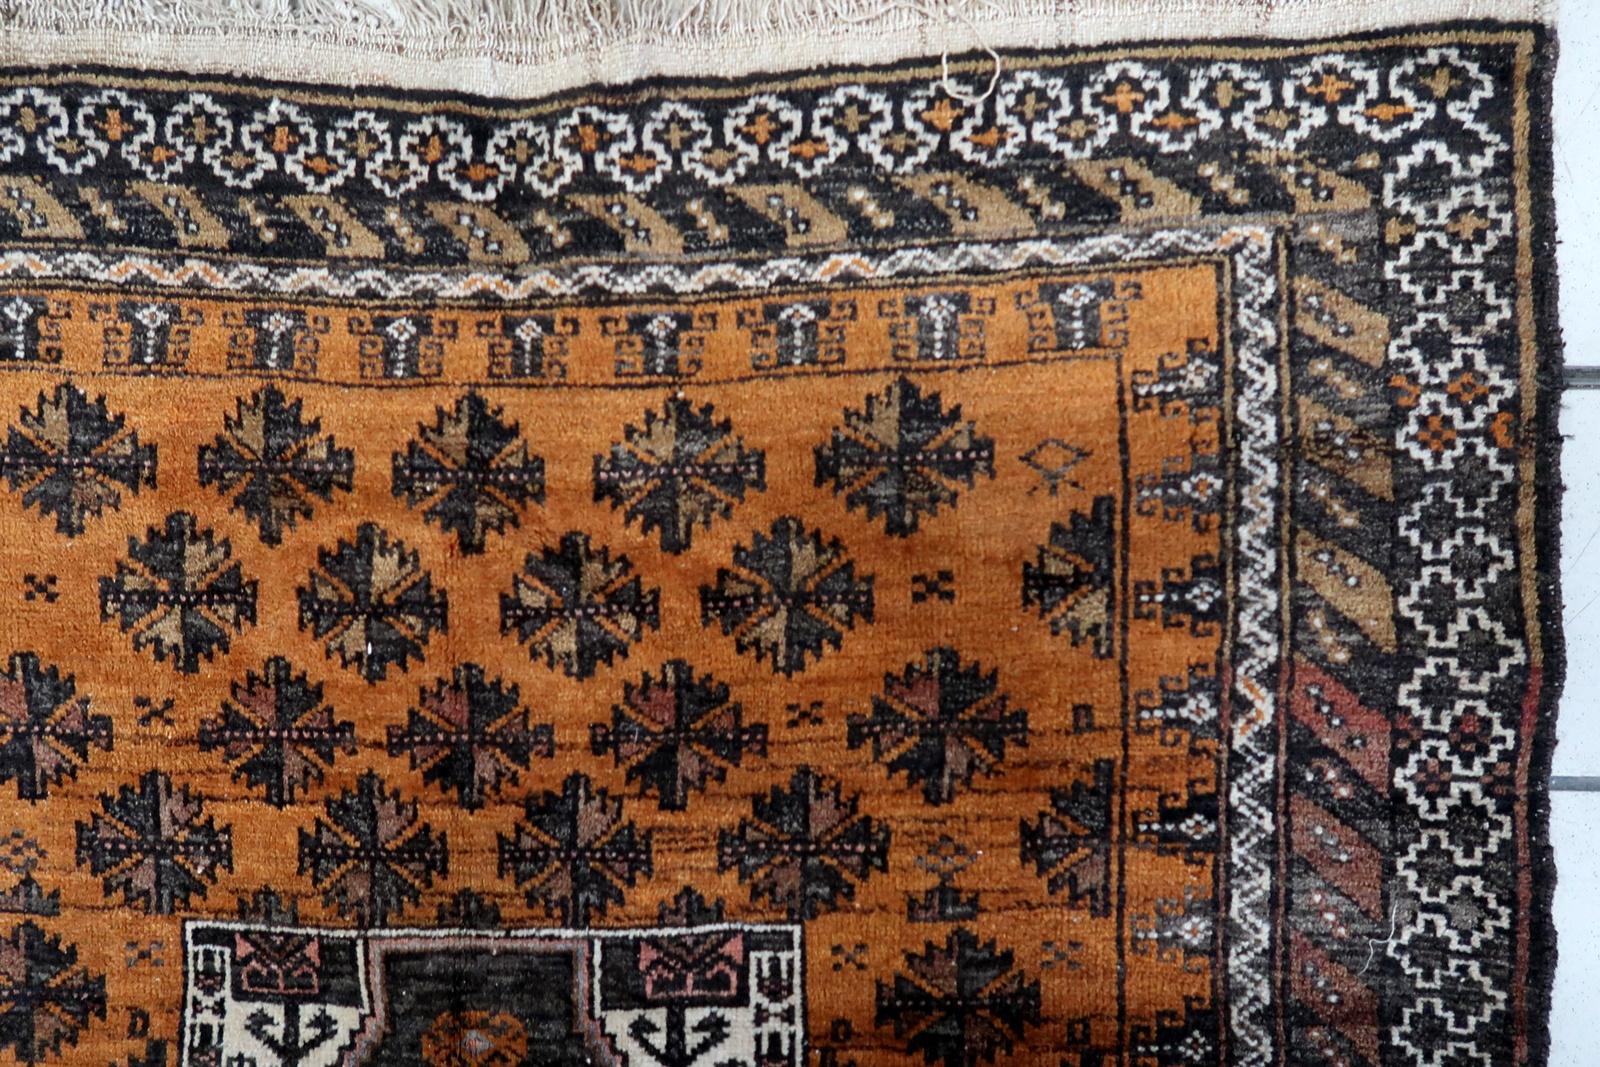 Handgefertigter antiker afghanischer Belutschen-Teppich:

Lassen Sie sich vom zeitlosen Charme unseres handgefertigten antiken afghanischen Belutsch-Teppichs verzaubern, der in den 1920er Jahren sorgfältig hergestellt wurde. Mit den Maßen 3,5' x